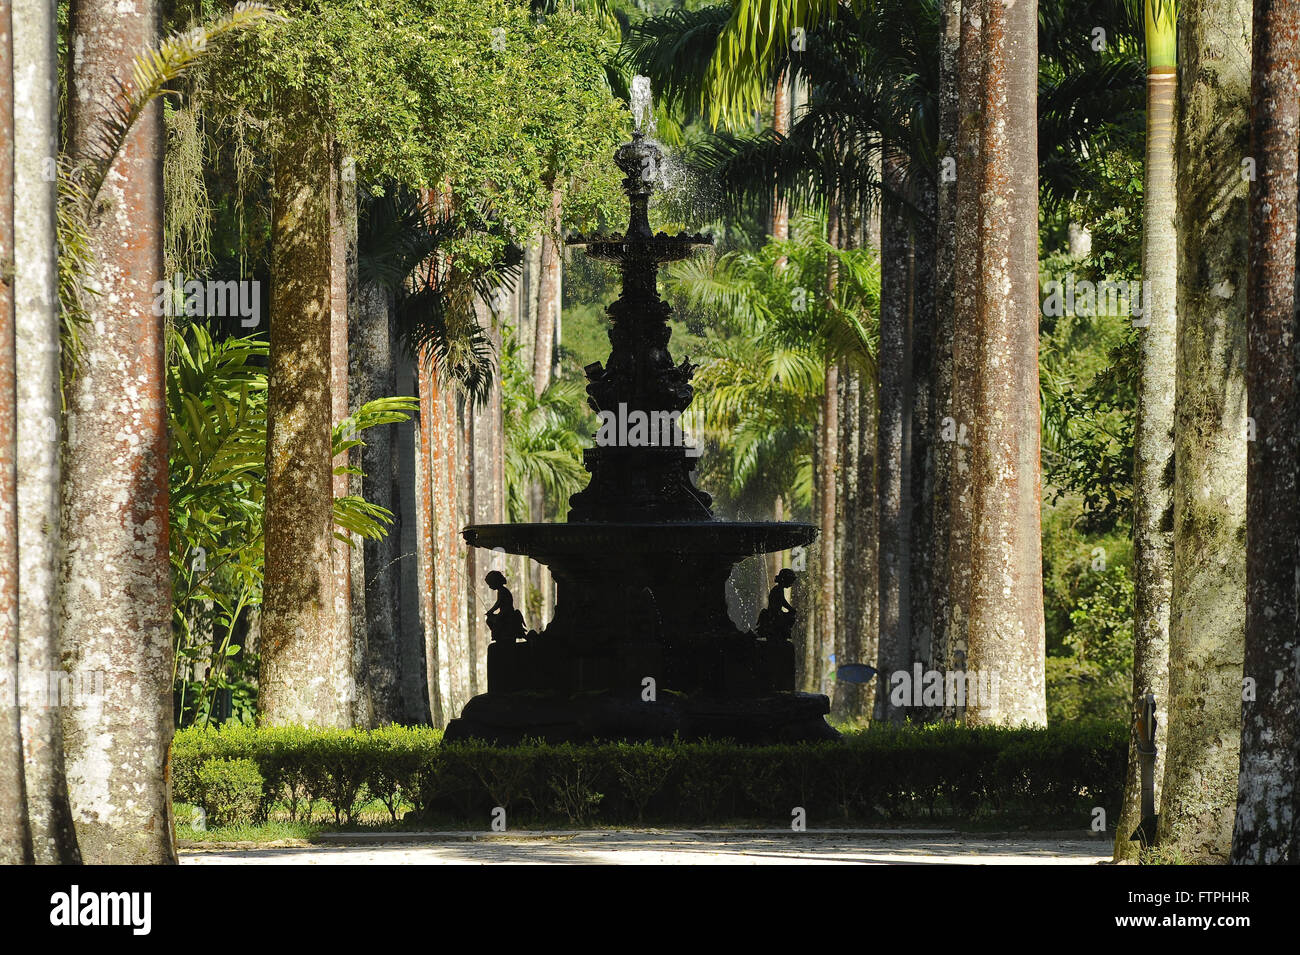 Imperial palme e fontana nel giardino botanico della città di Rio de Janeiro Foto Stock